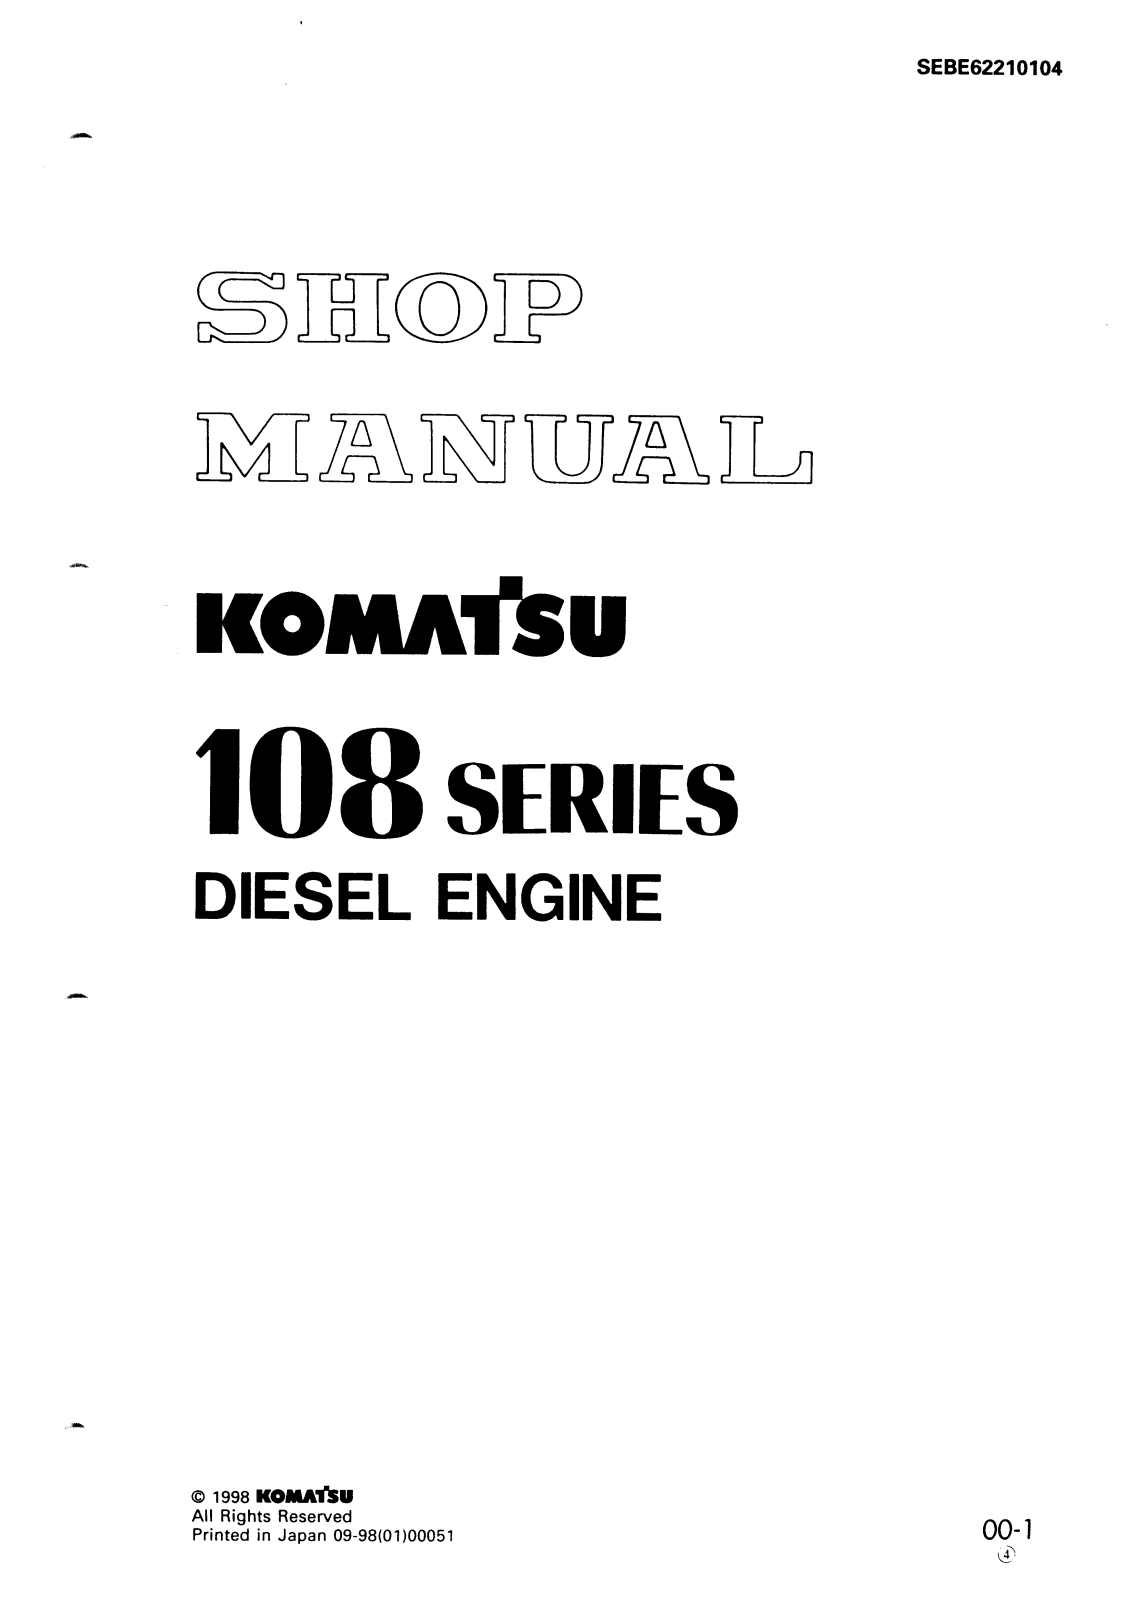 Komatsu 108 Service Manual